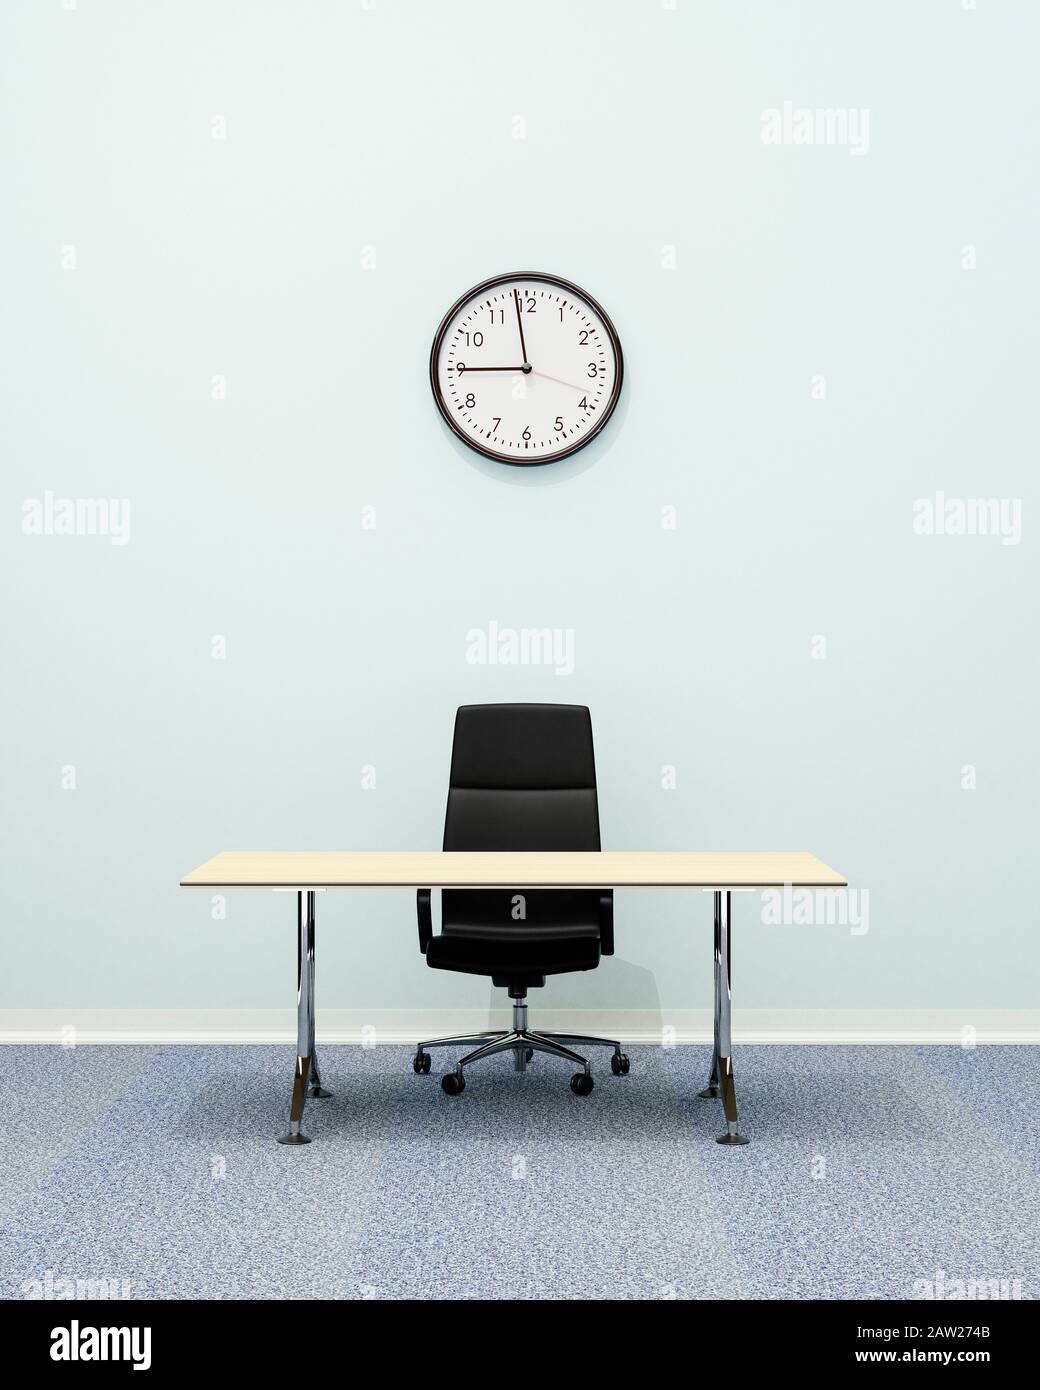 Intérieur de bureau, chaise de bureau en cuir de luxe et bureau vide avec une horloge murale montrant 9:00 Banque D'Images